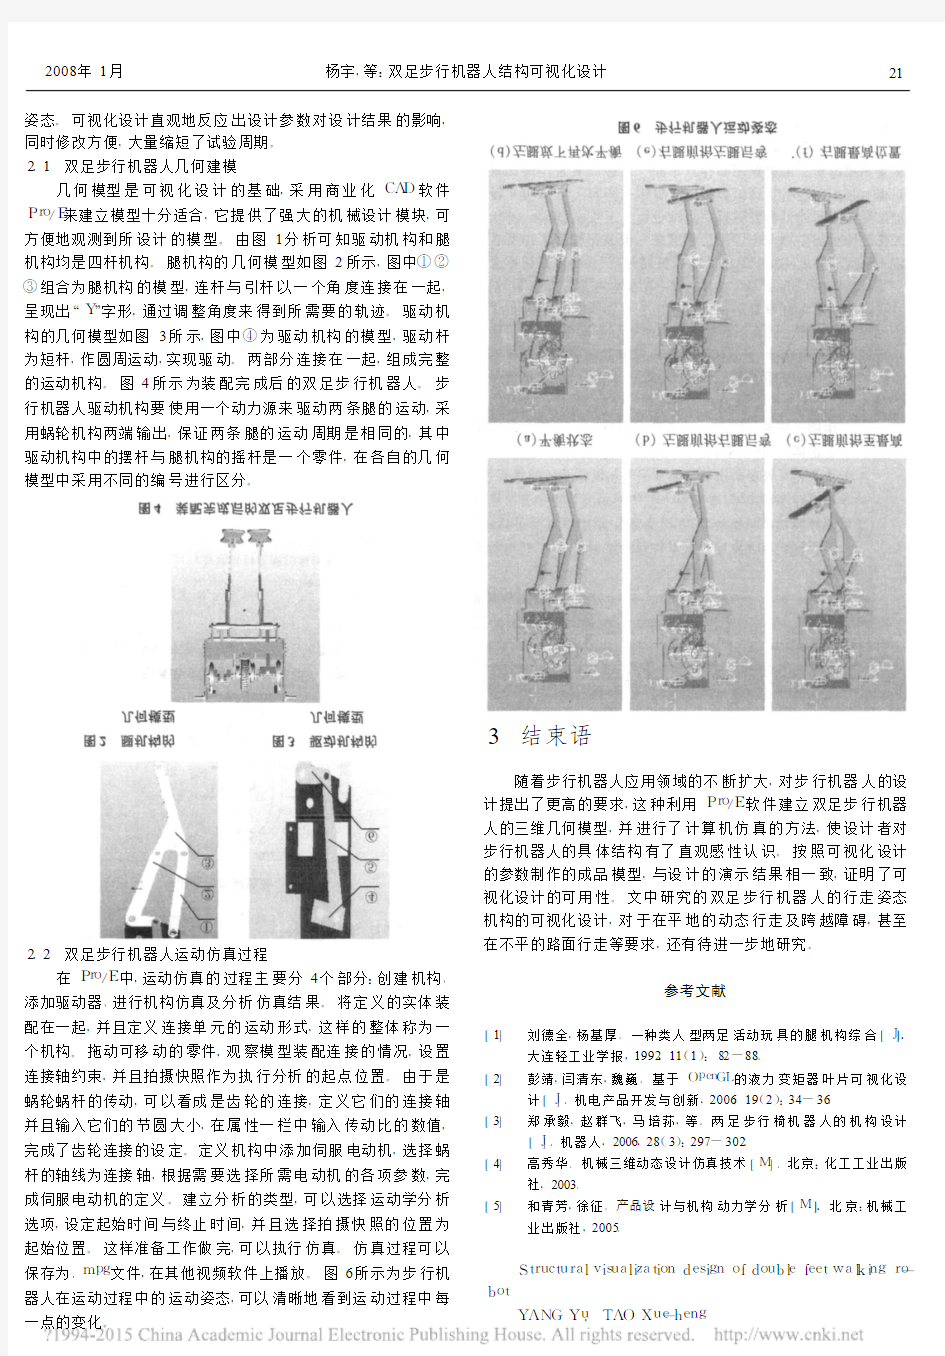 双足步行机器人结构可视化设计_杨宇